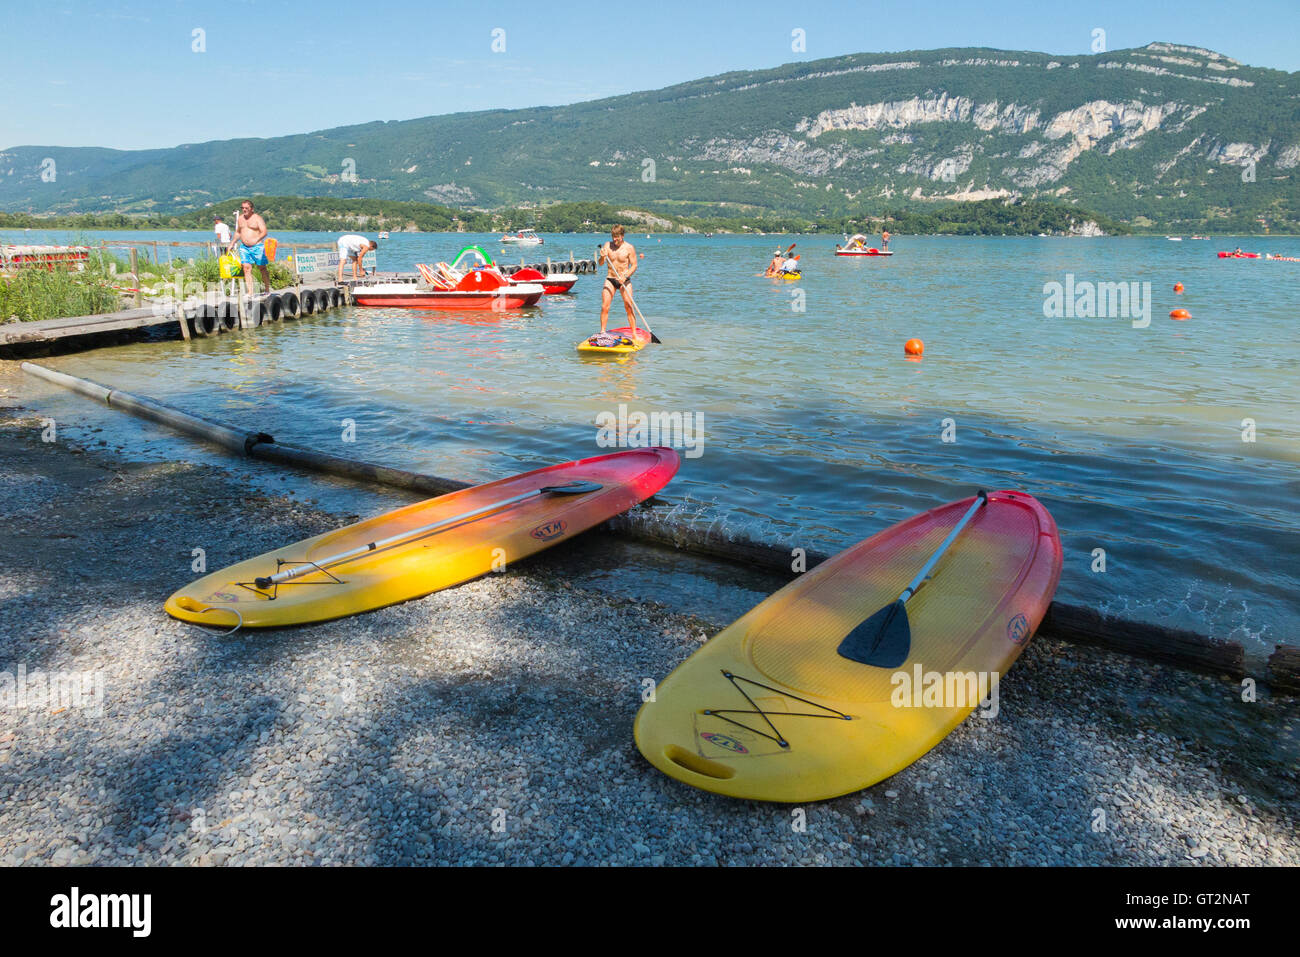 Spiaggia / spiaggia sul lago a Conjux ( Port de Conjux ) - sul Lago du Bourget (Lac du Bourget) in Savoia, Francia. Foto Stock